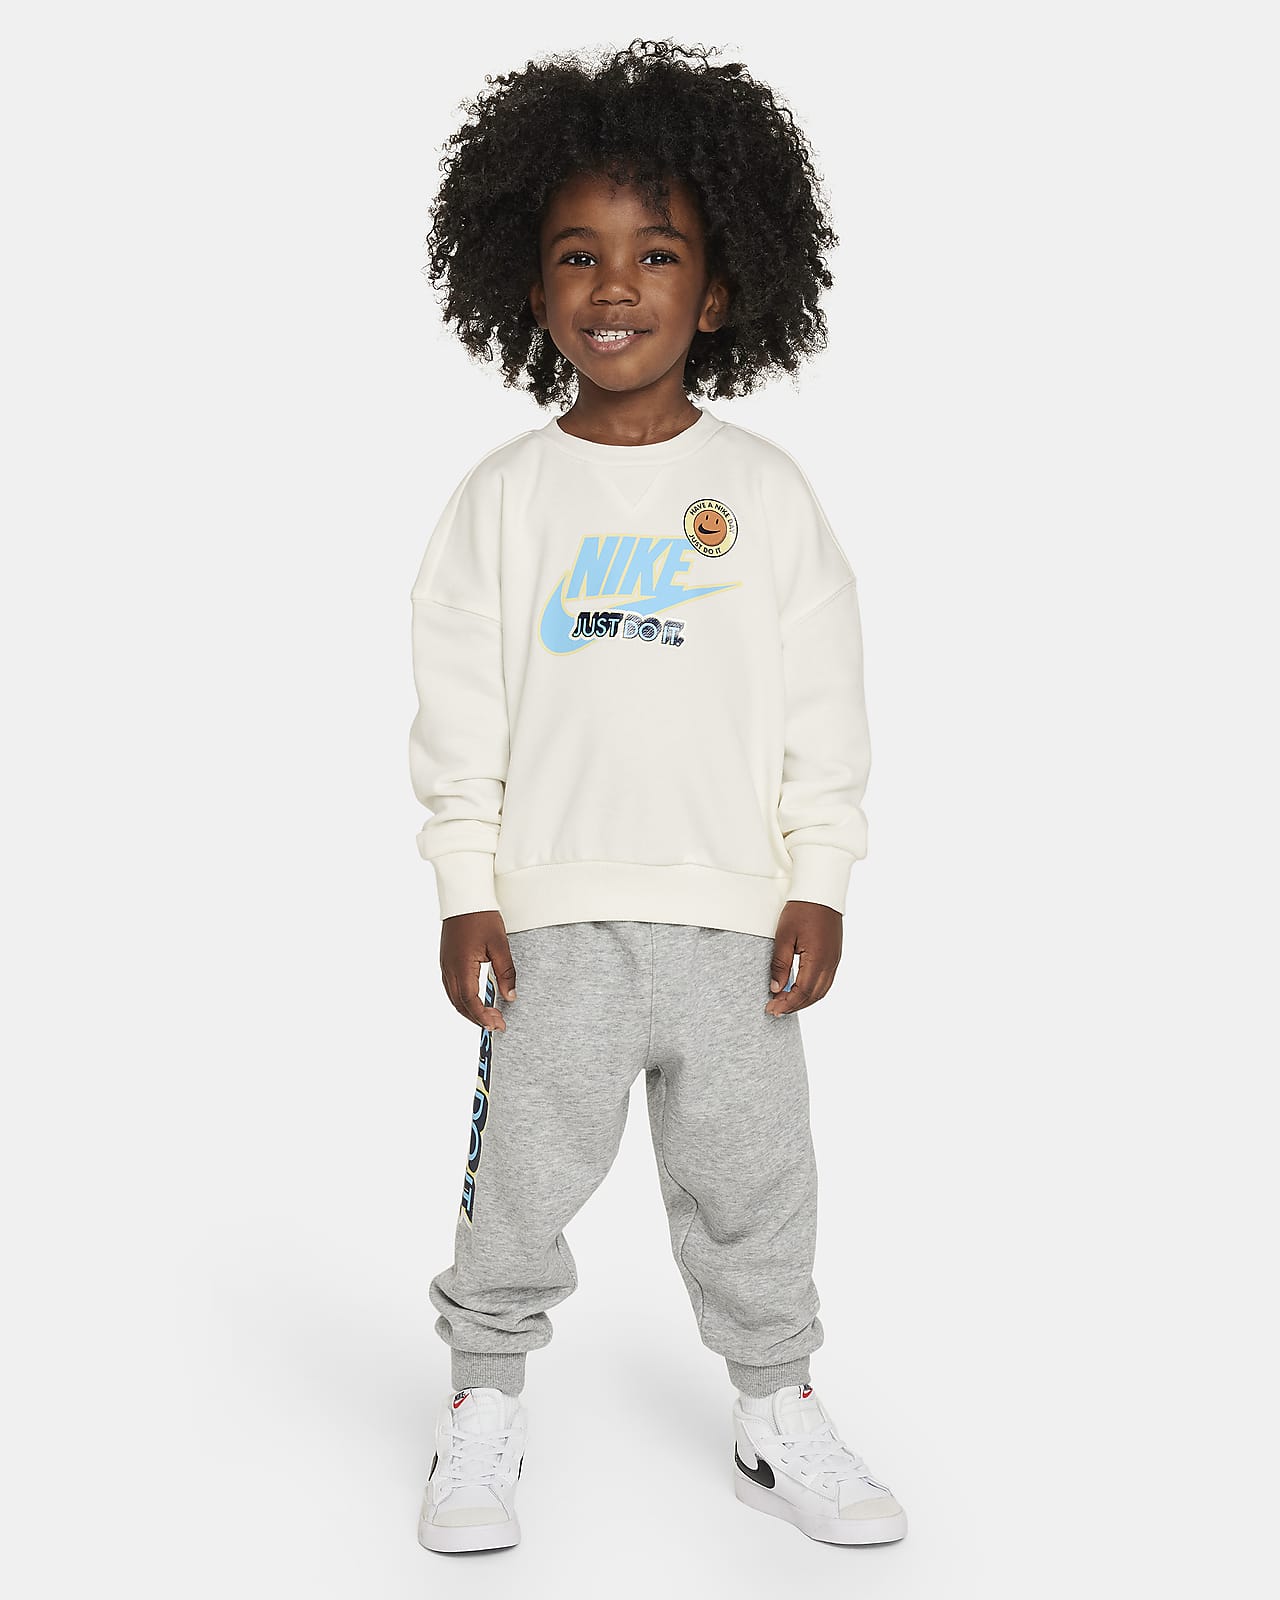 Nike Sportswear 婴童法式毛圈圆领上衣和长裤套装